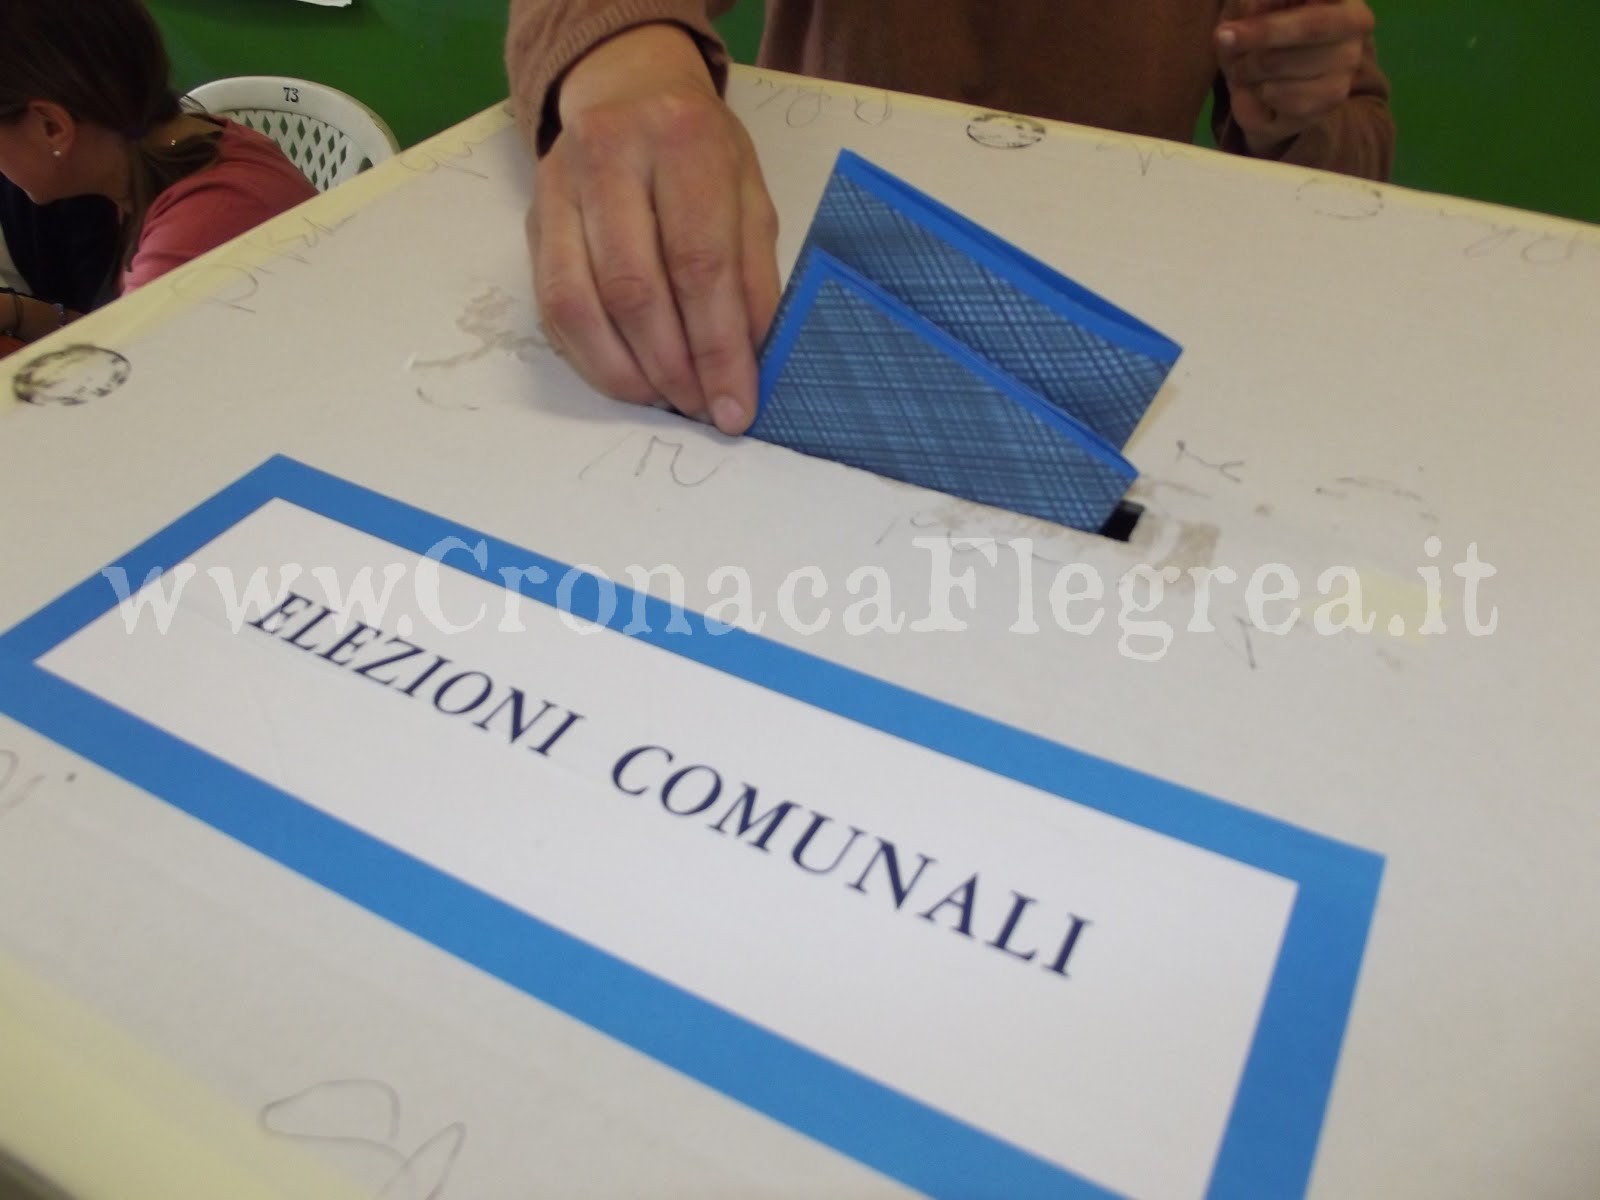 Voto di scambio a Pozzuoli: i fari della Magistratura puntati sui mandanti